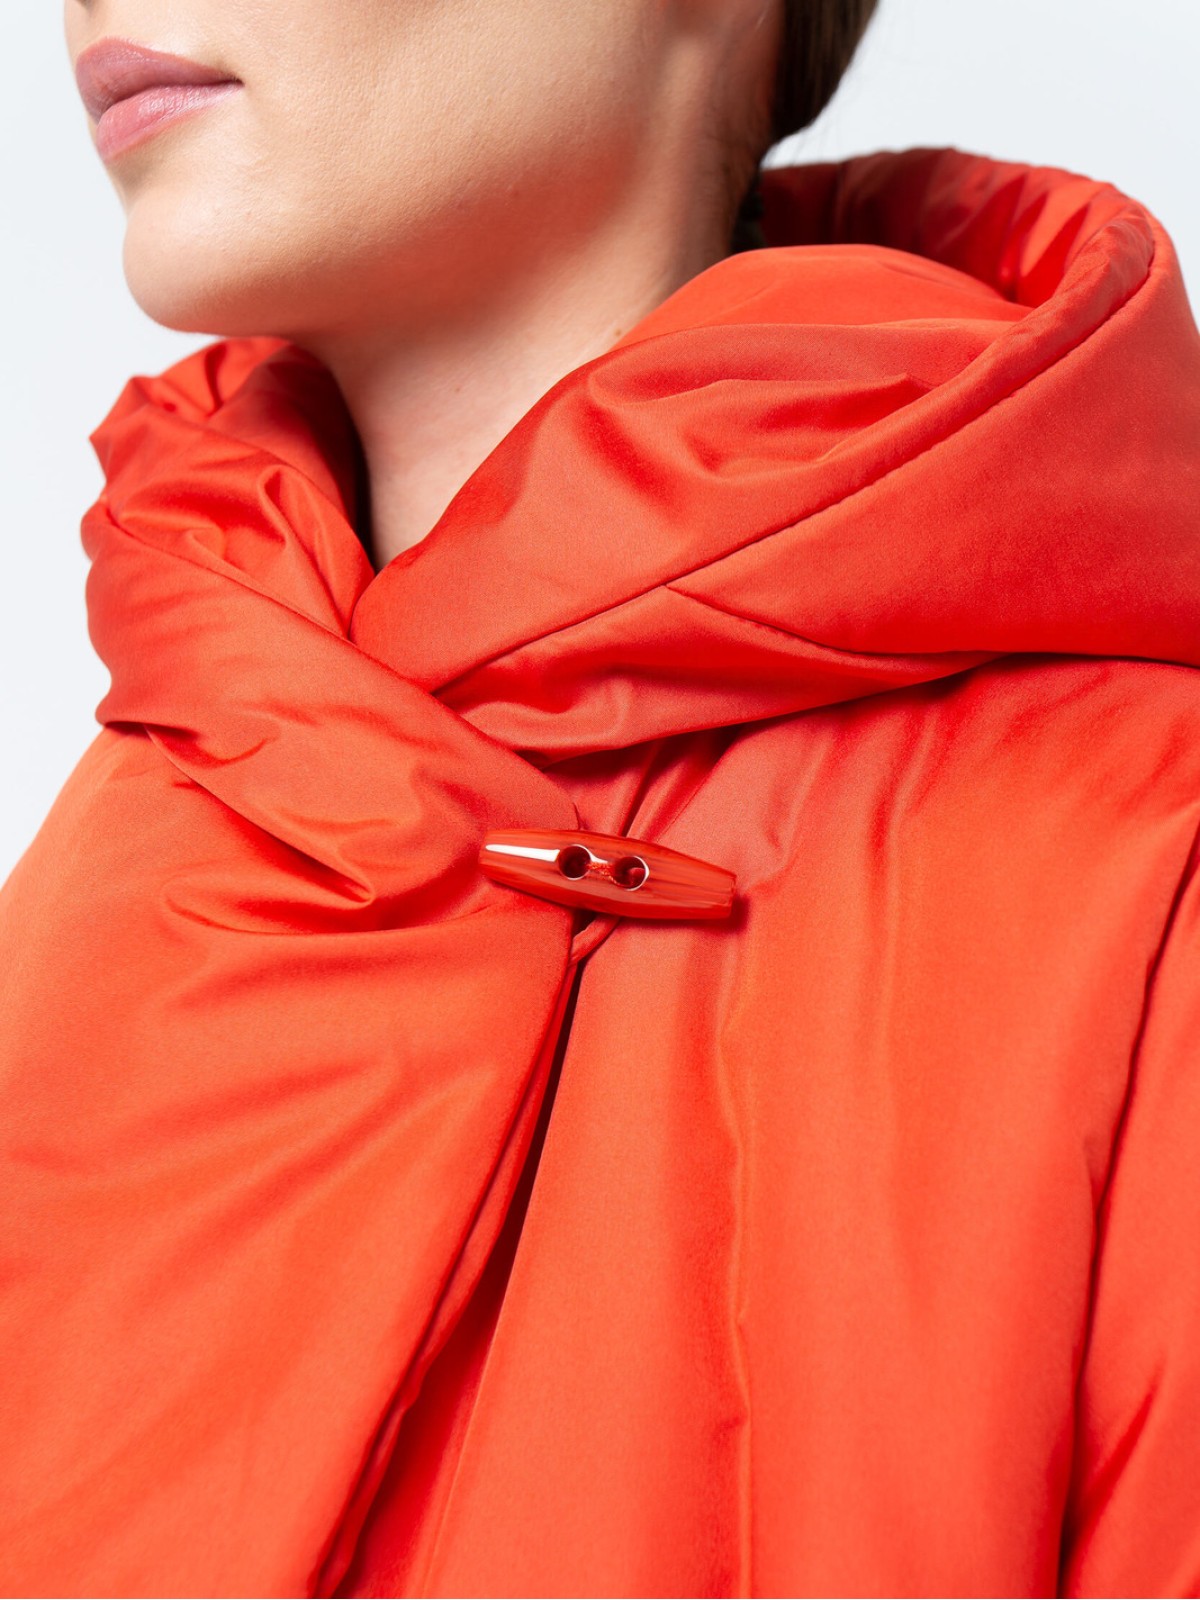 Пуховик-одеяло c капюшоном Mandarin Red (Оранжевый)